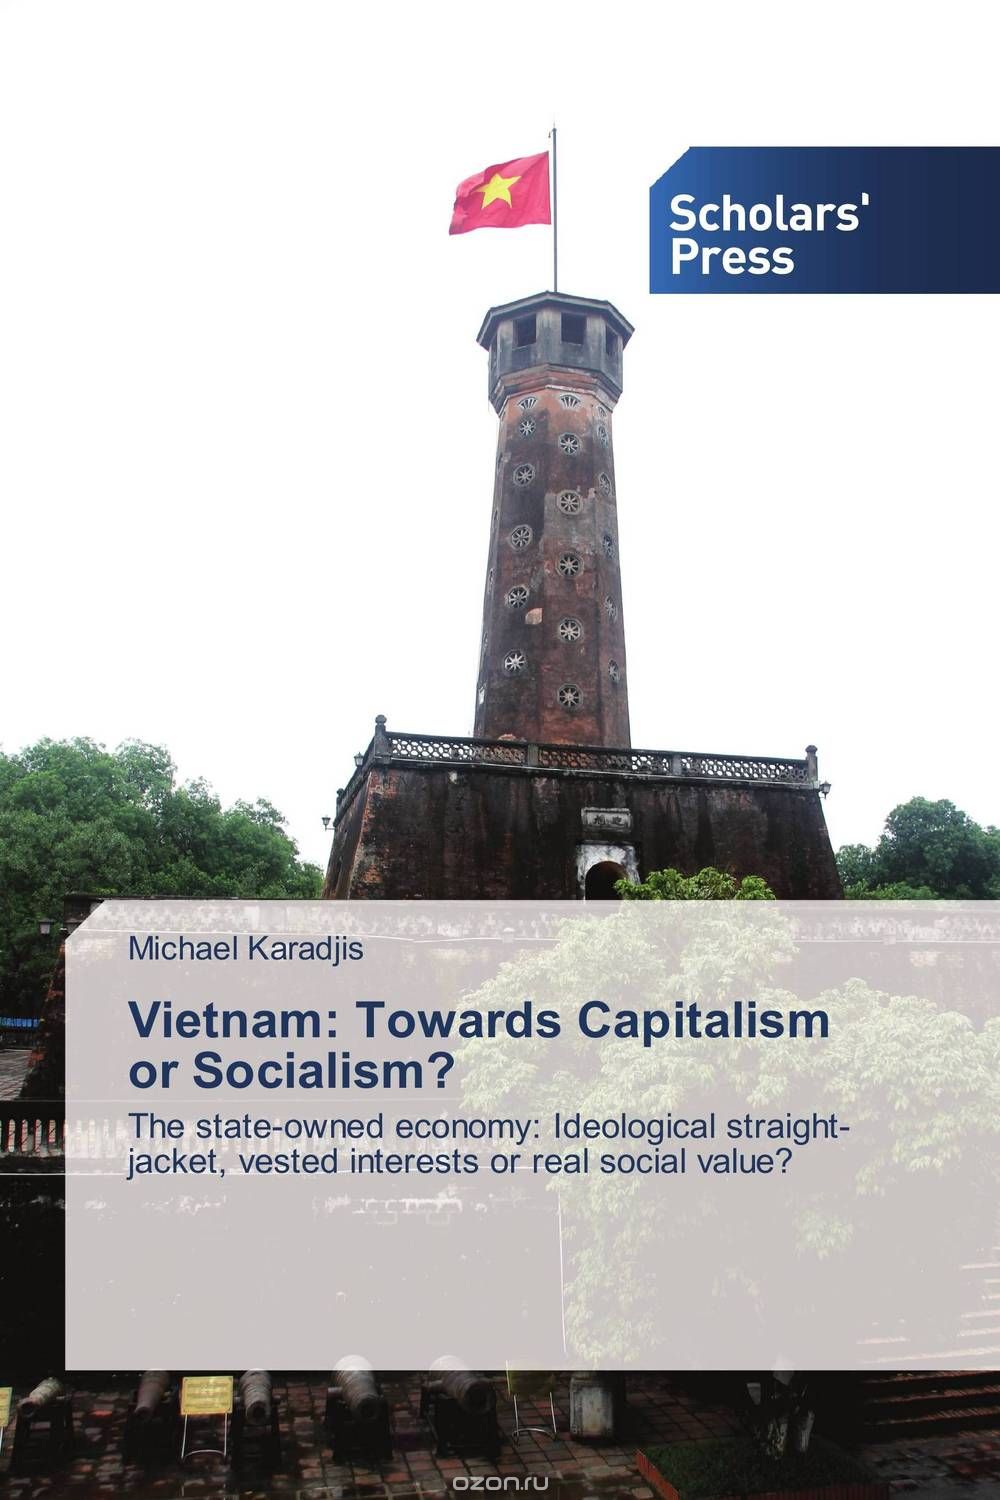 Скачать книгу "Vietnam: Towards Capitalism or Socialism?"